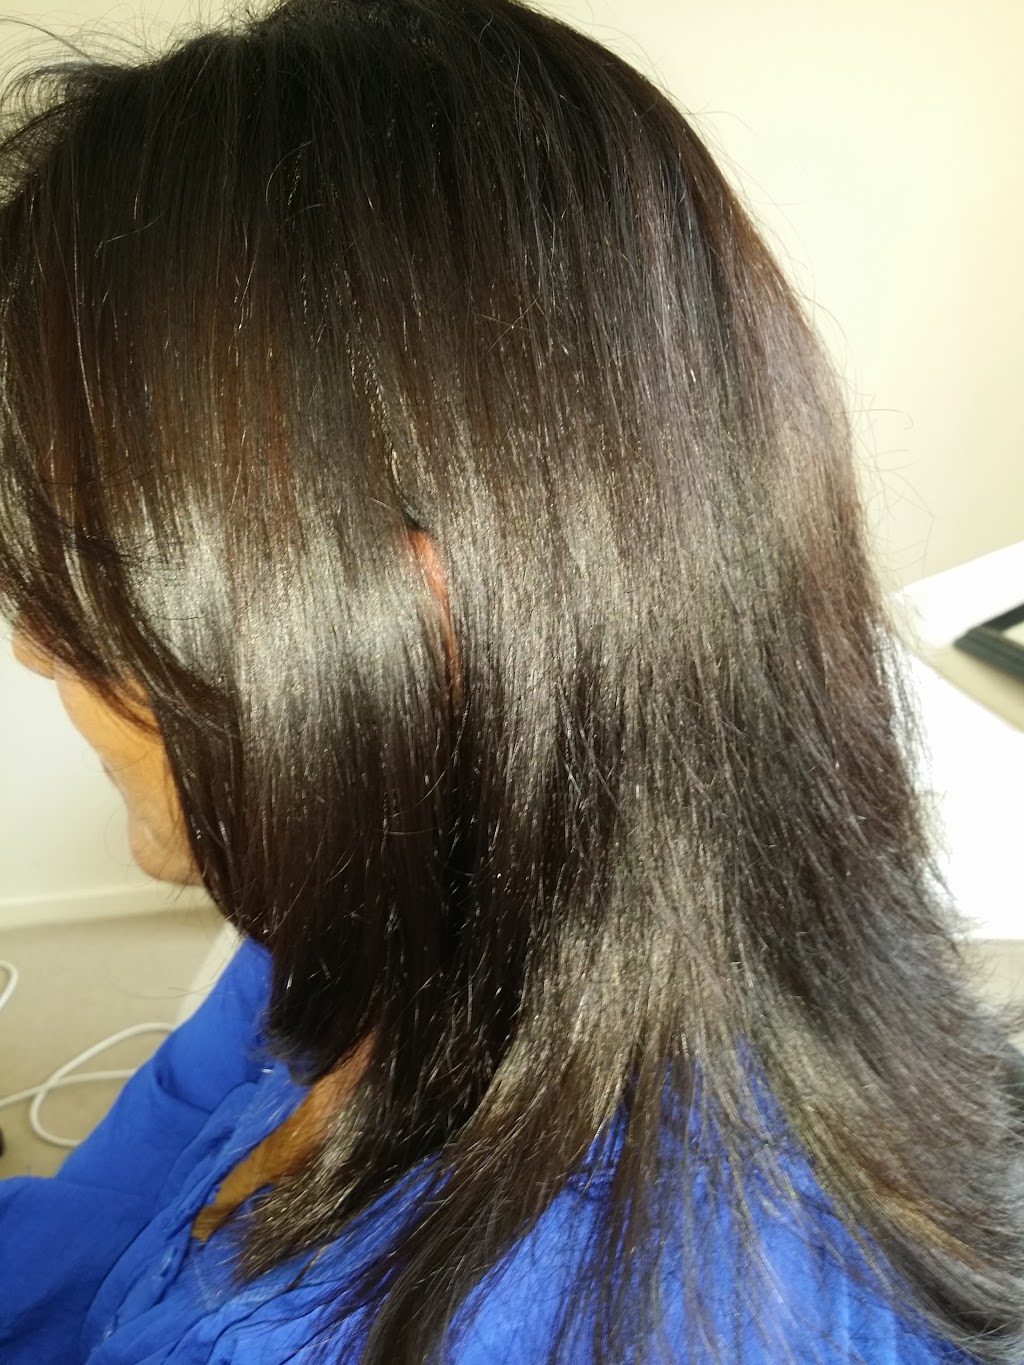 VISHWA HAIR & BEAUTY SALON | hair care | 4 Parkvista Dr, Truganina VIC 3029, Australia | 0466279391 OR +61 466 279 391